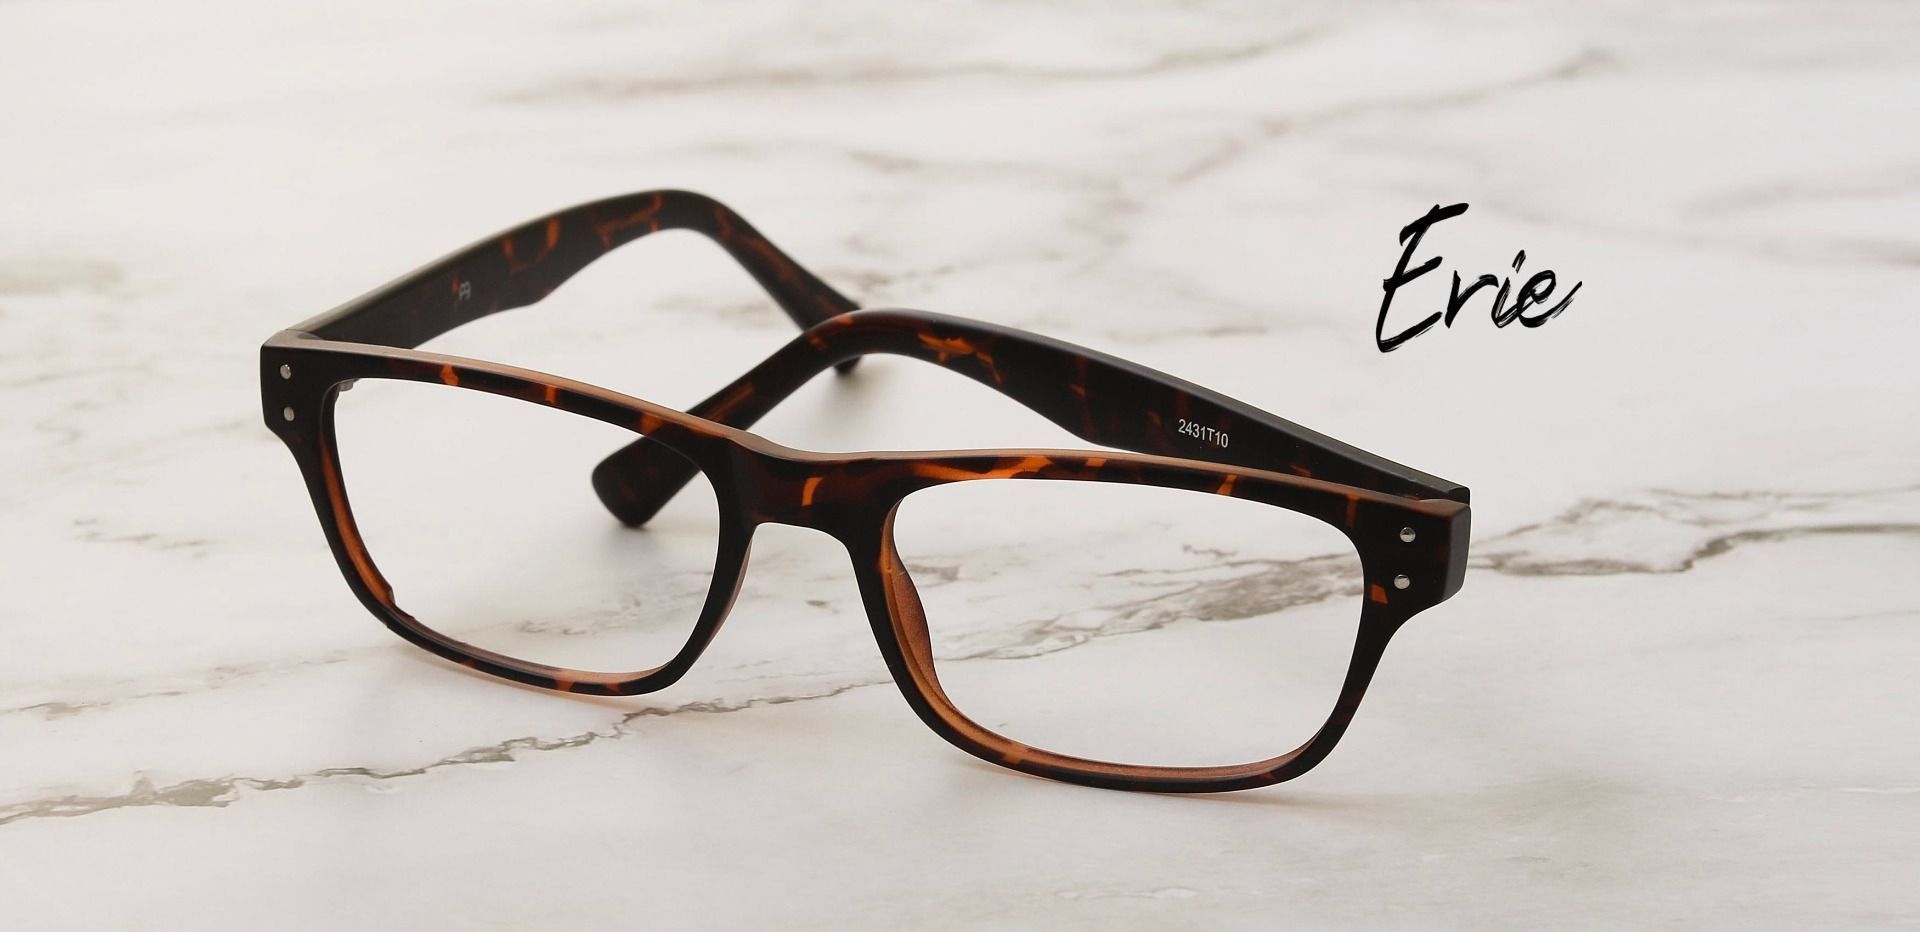 Erie Rectangle Prescription Glasses Tortoise Women's Eyeglasses